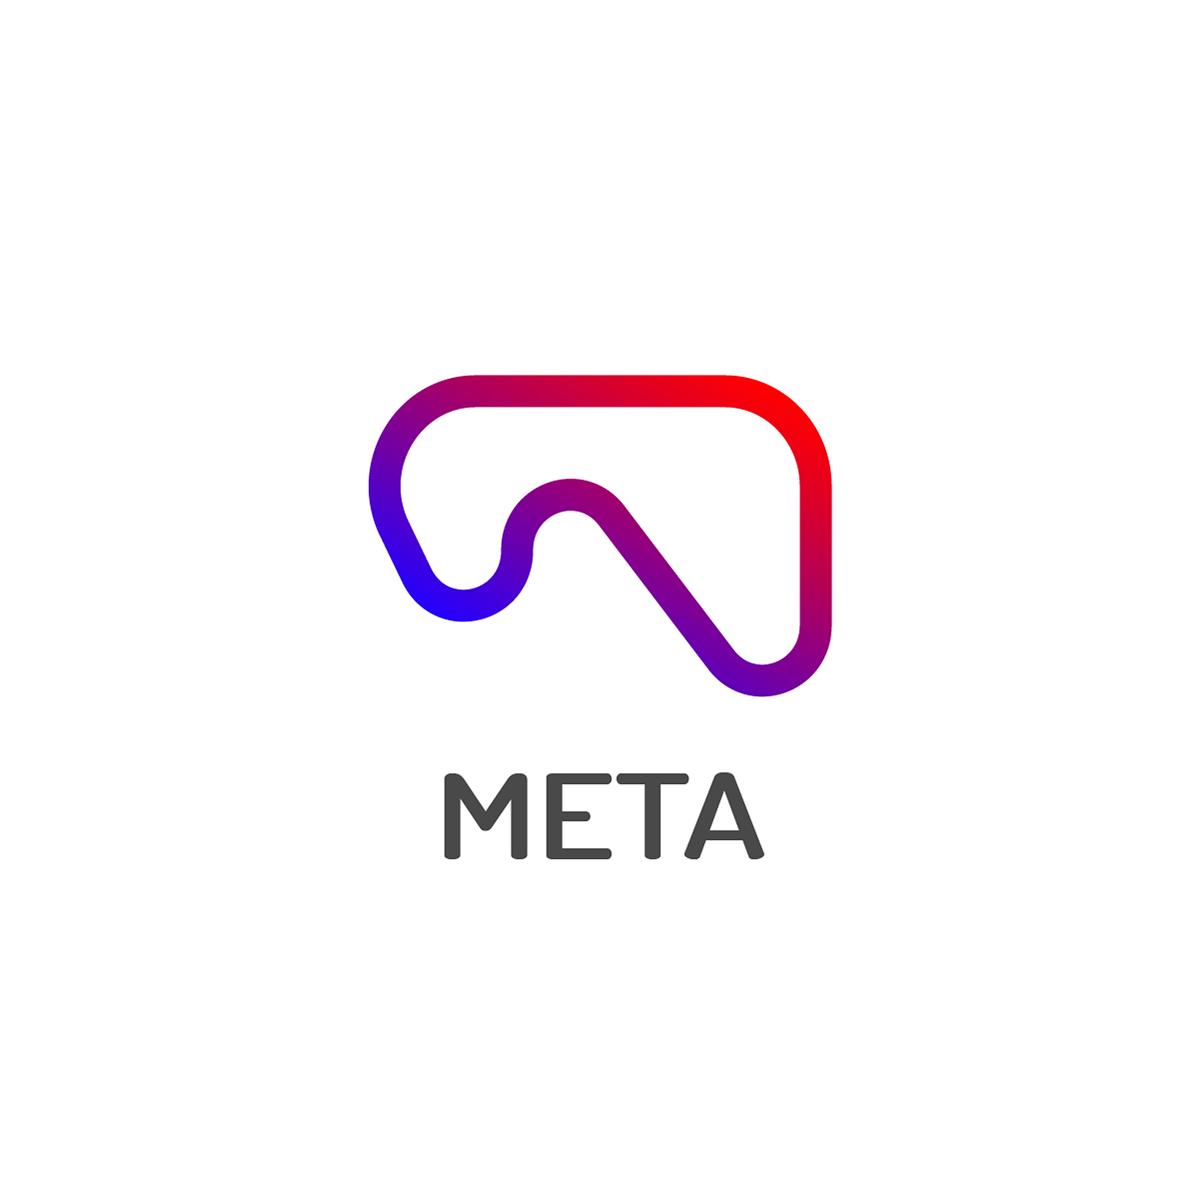 Brand Design degital logo logo meta metalogo Metamorphosis metaphor metaverse